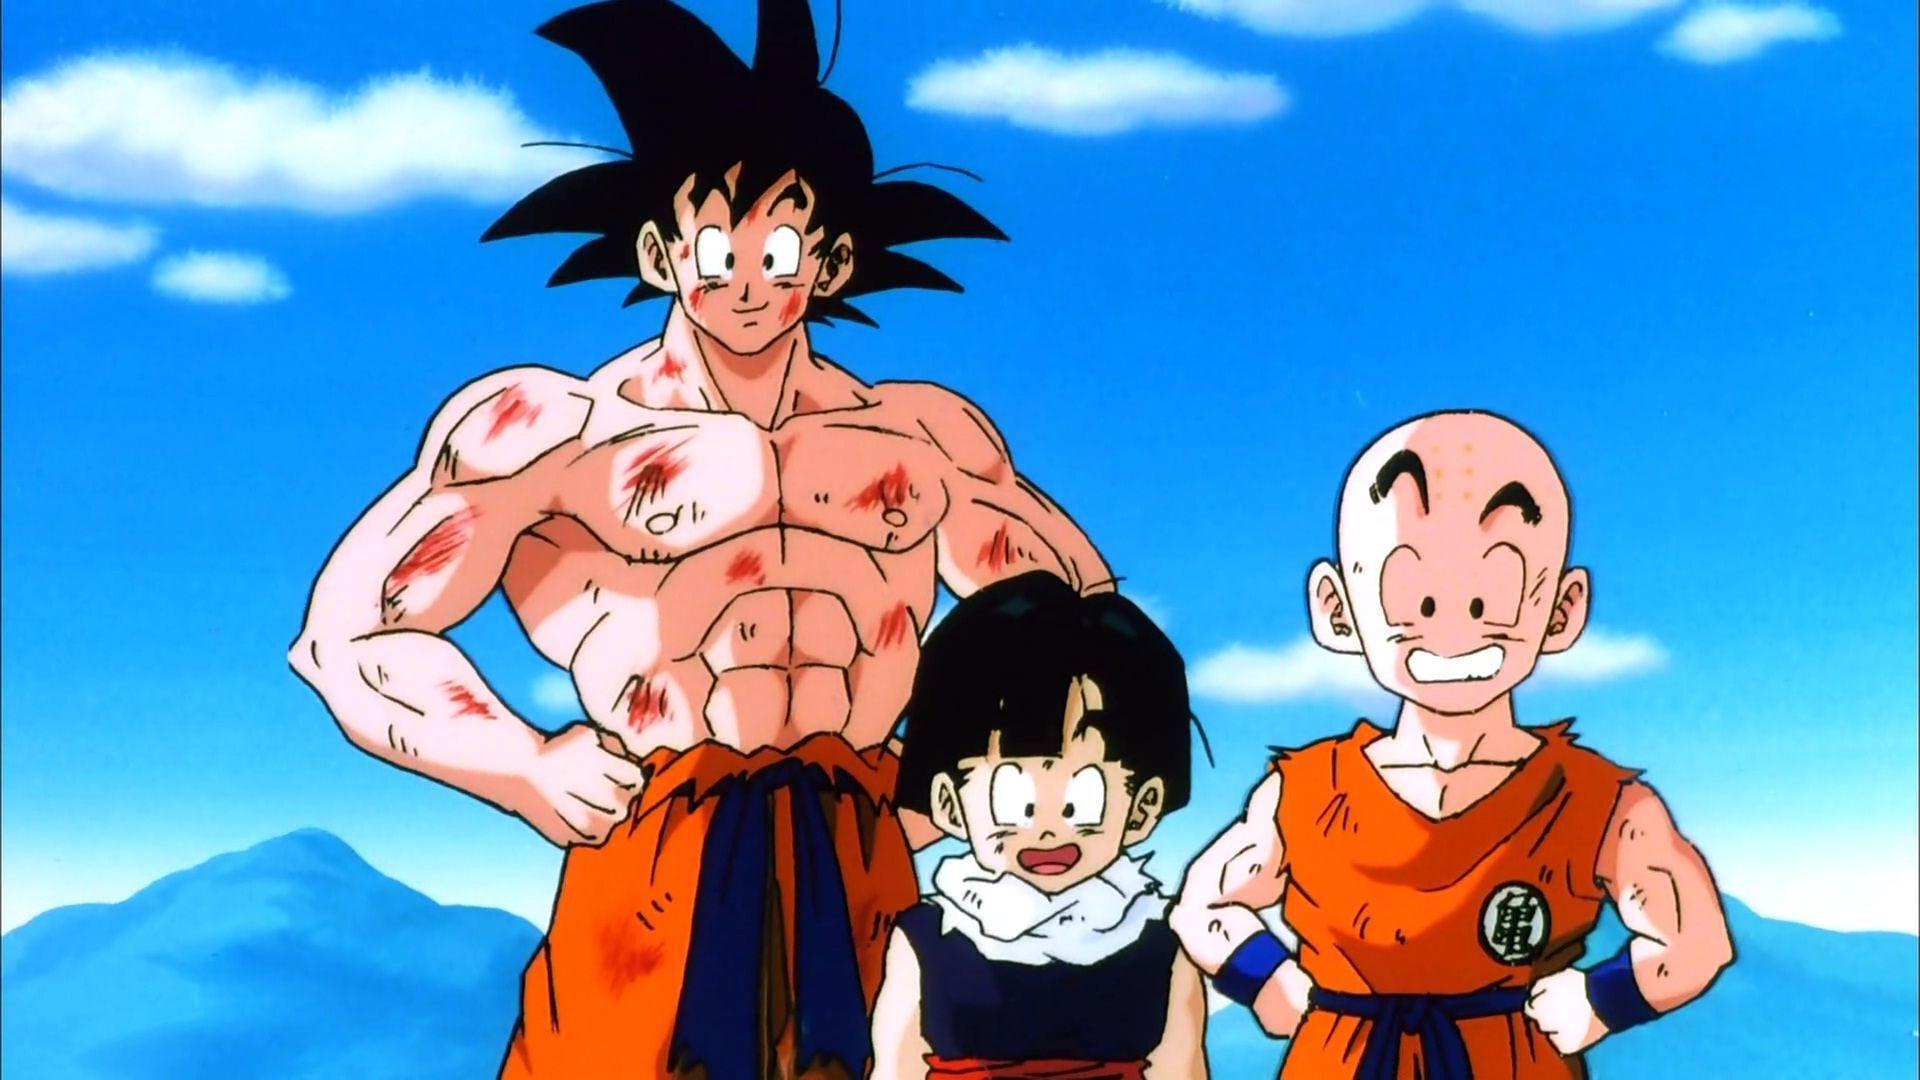 Goku, Krillin, and Gohan (Lord Slug)